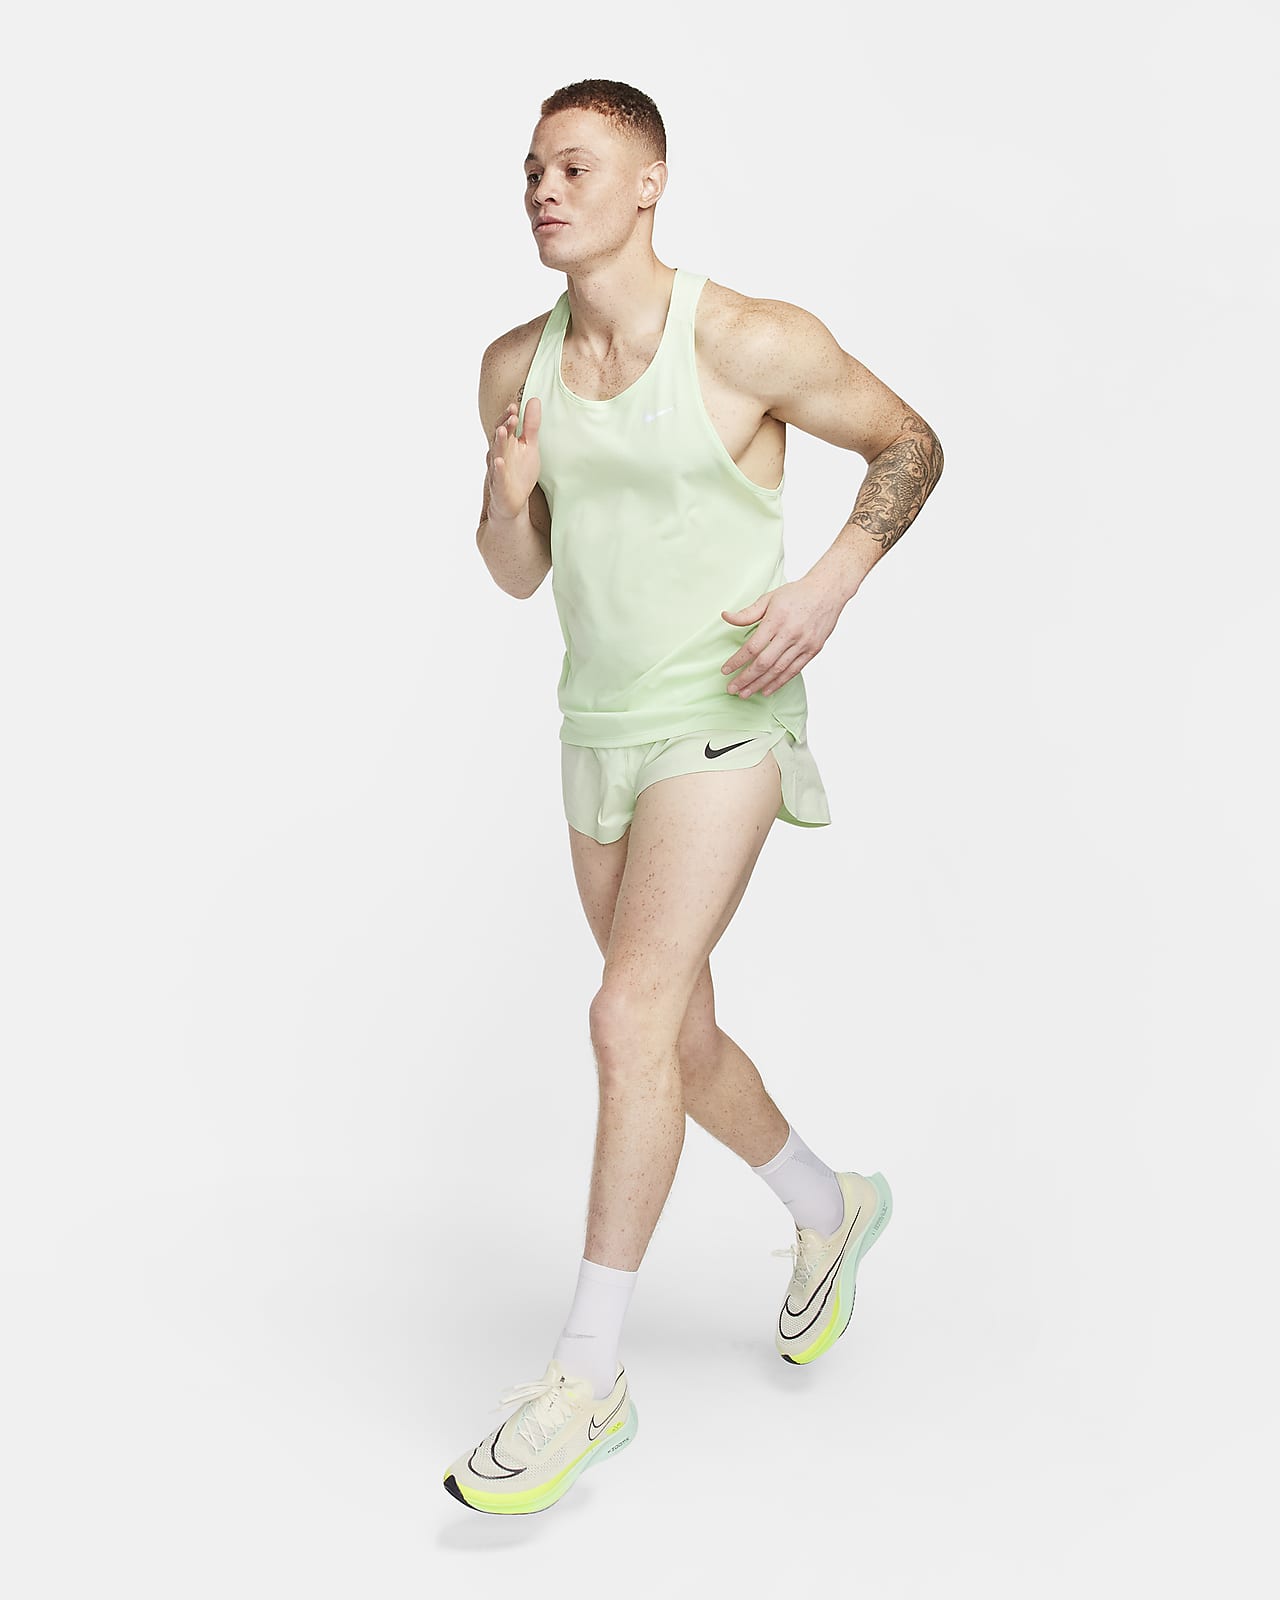 Mens Nike Aeroswift 2 Inch Running Racing Shorts Navy White AQ5257-410 $80  NEW